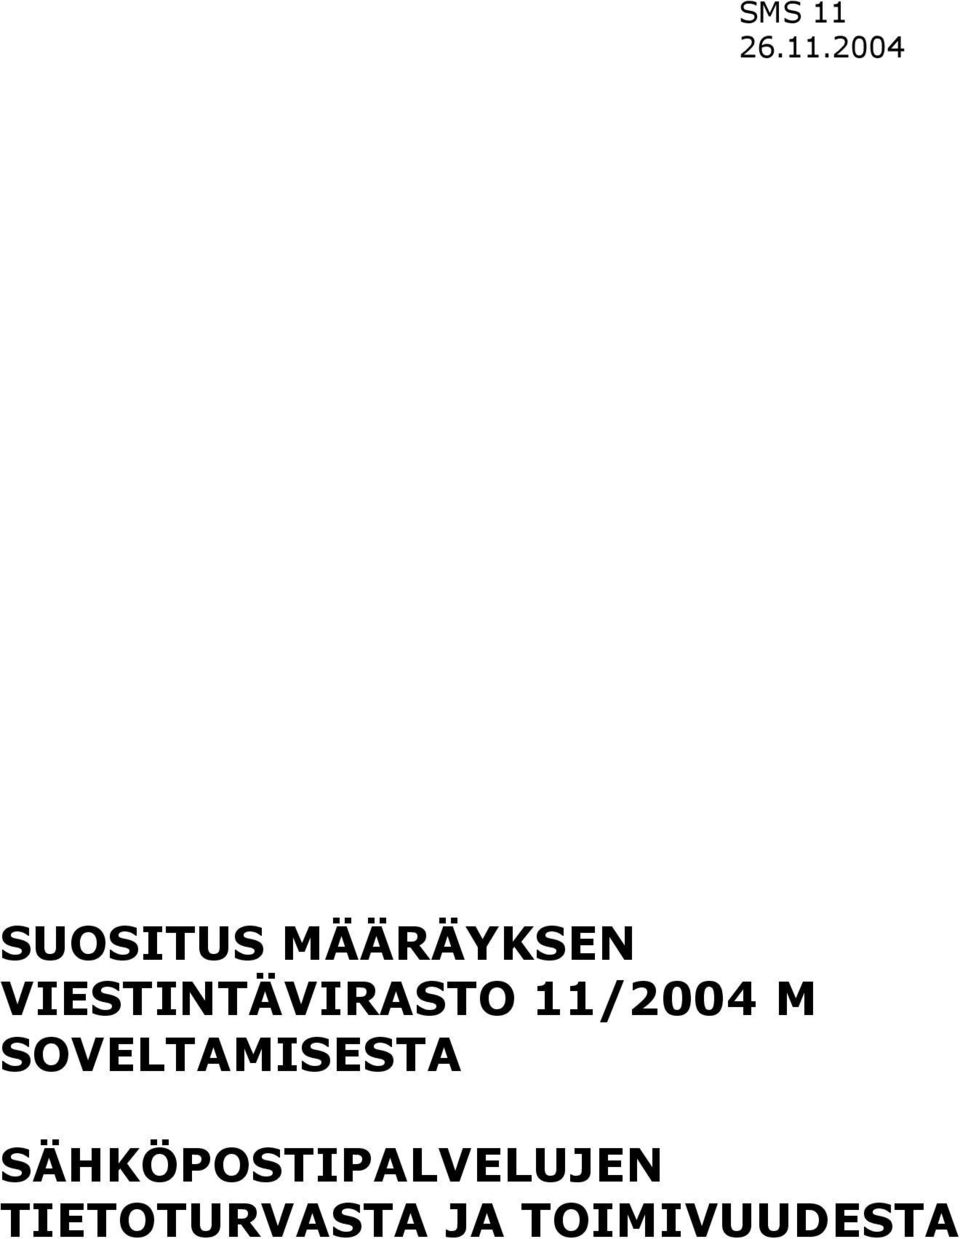 2004 SUOSITUS MÄÄRÄYKSEN